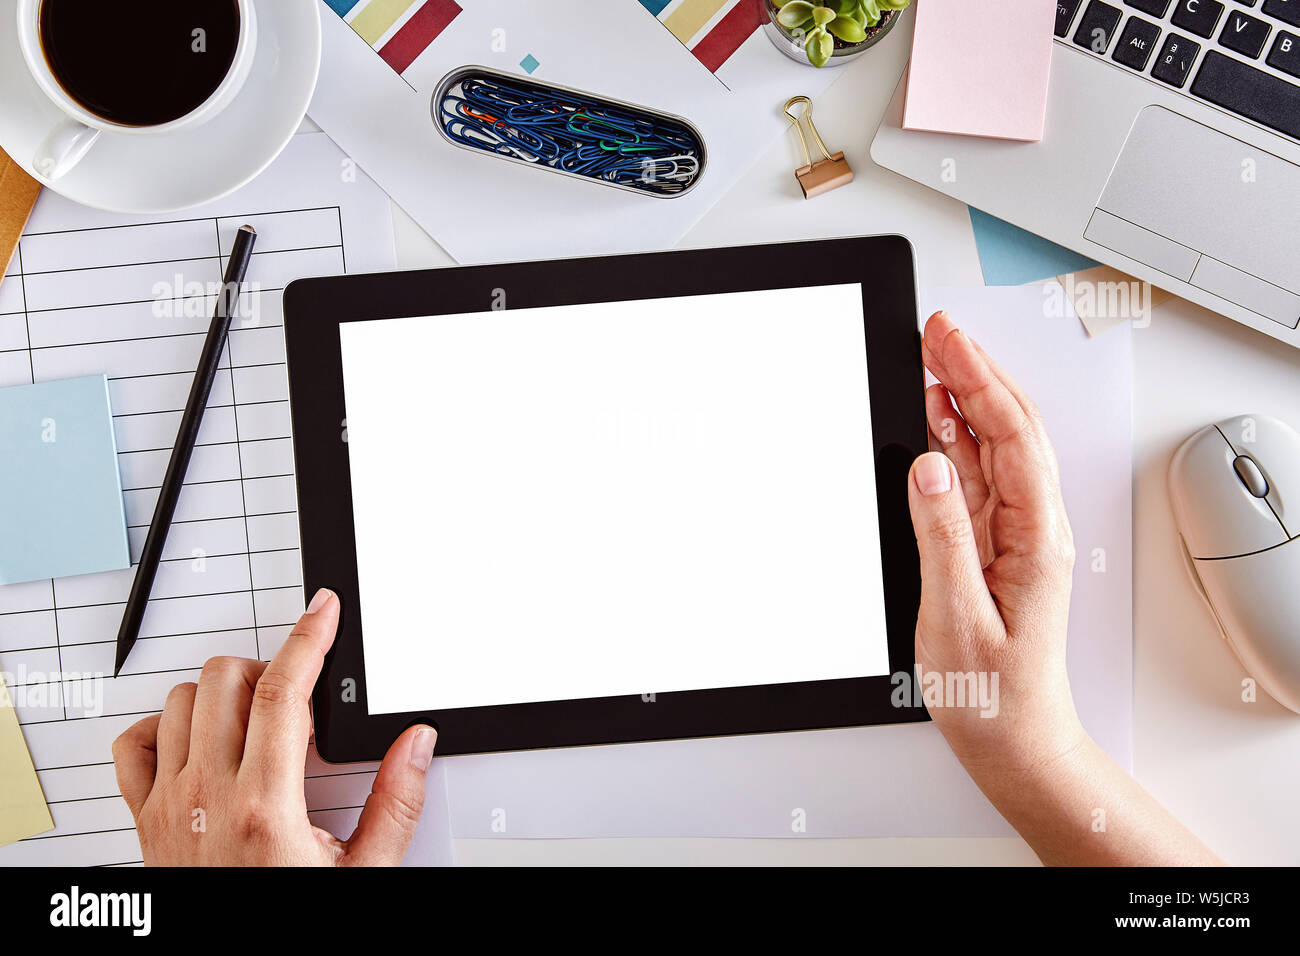 El Boceto de la imagen digital de manos usando un Tablet PC con pantalla en blanco en el escritorio. Vista superior Foto de stock